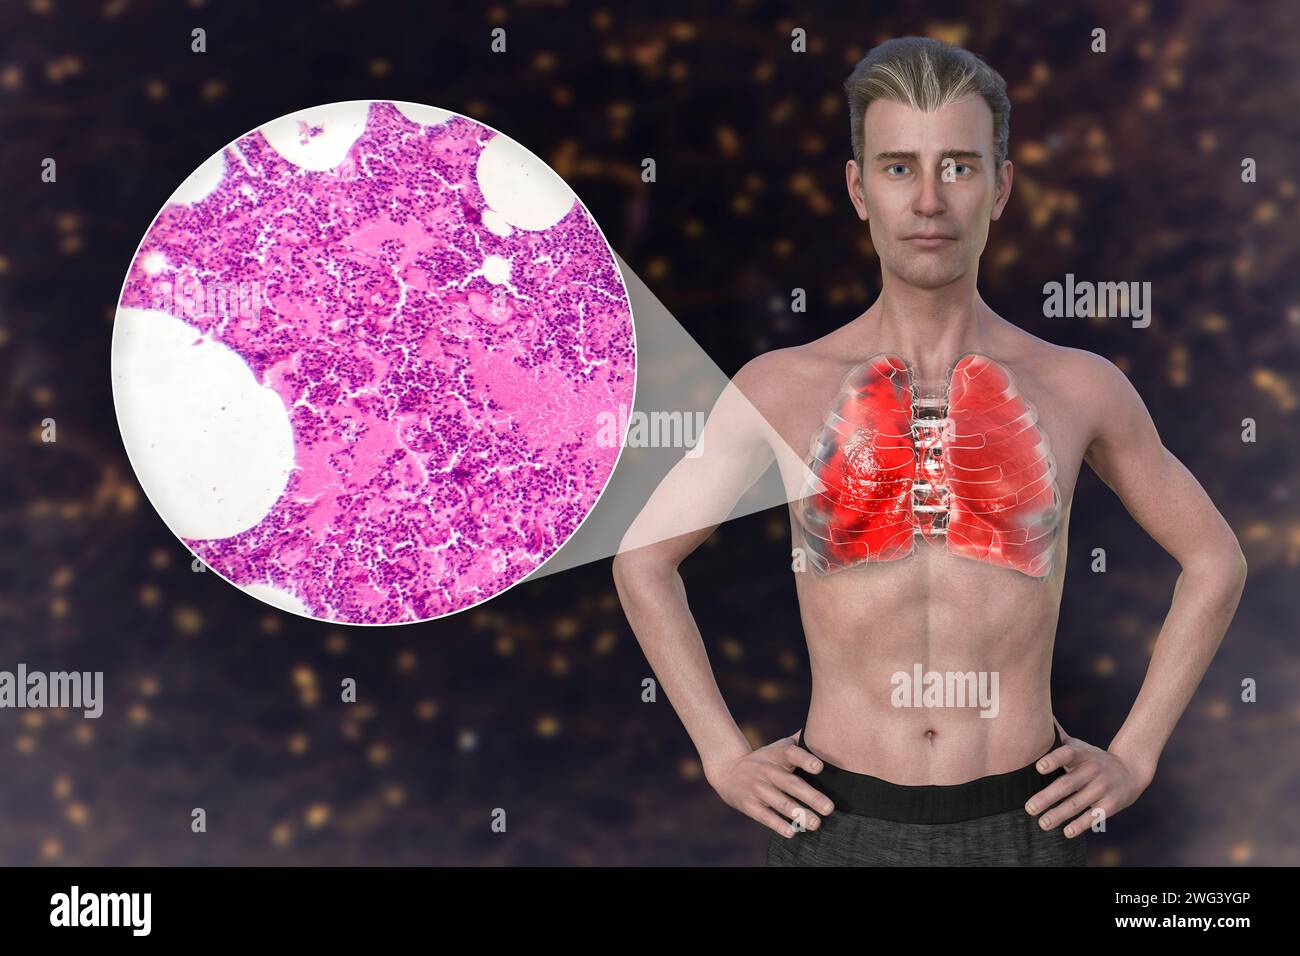 Homme avec des poumons affectés par une pneumonie, illustration Banque D'Images